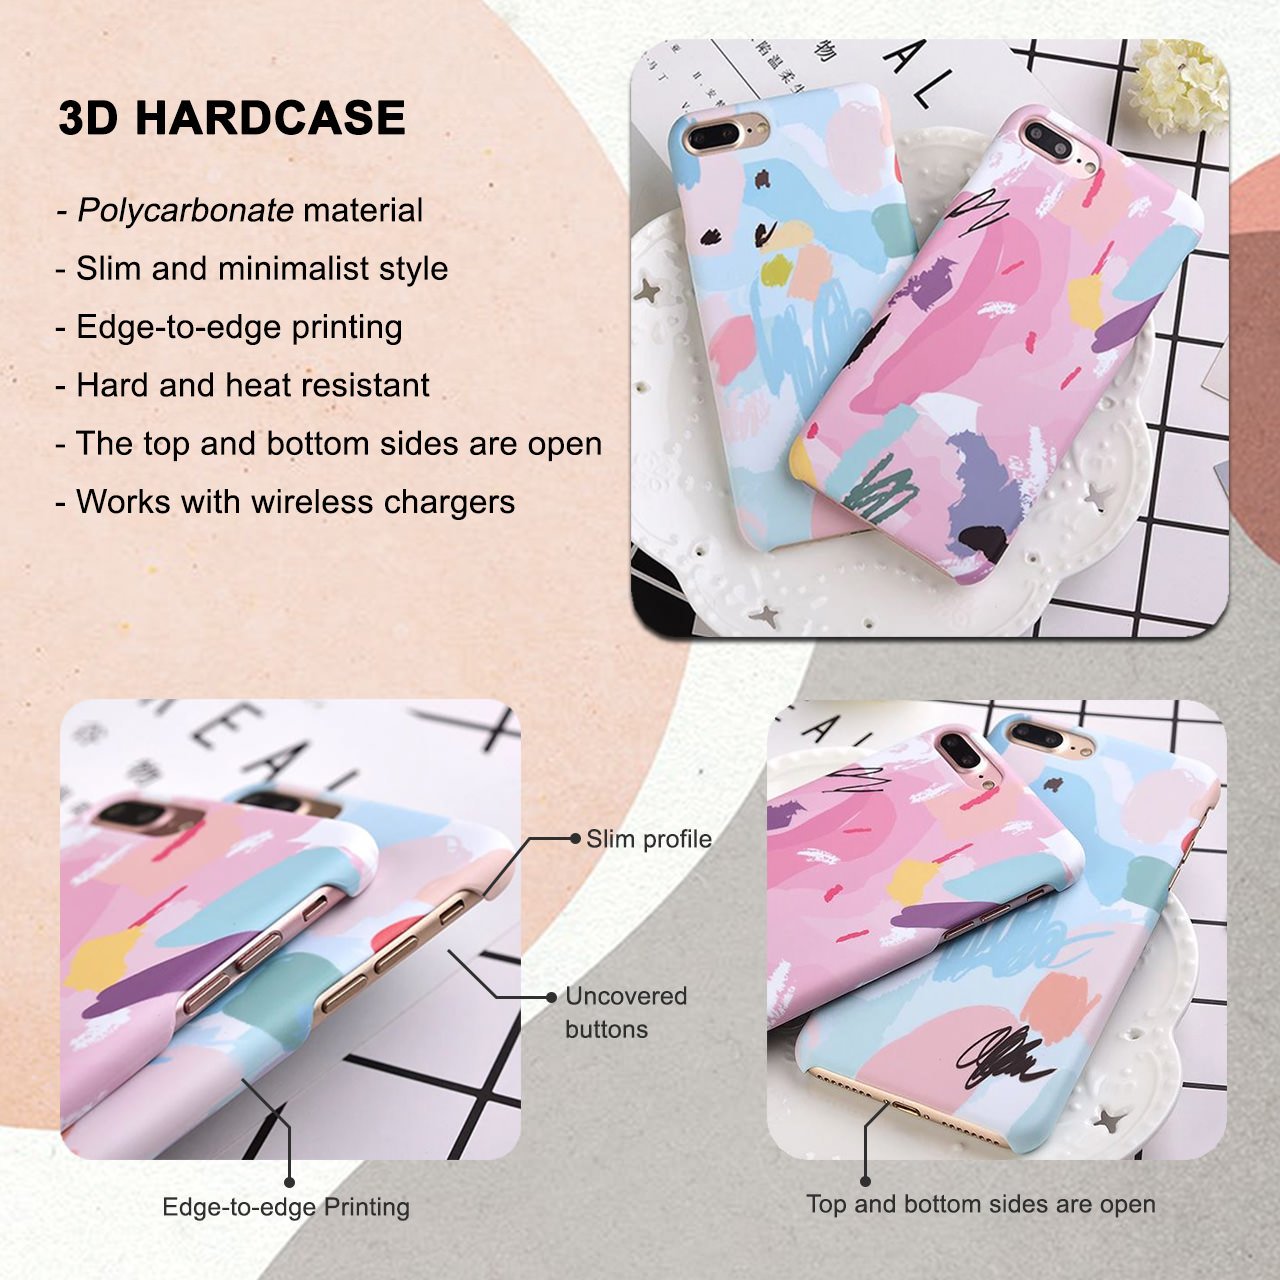 Pastel Rainbow Tie Dye iPhone 6/6S Case